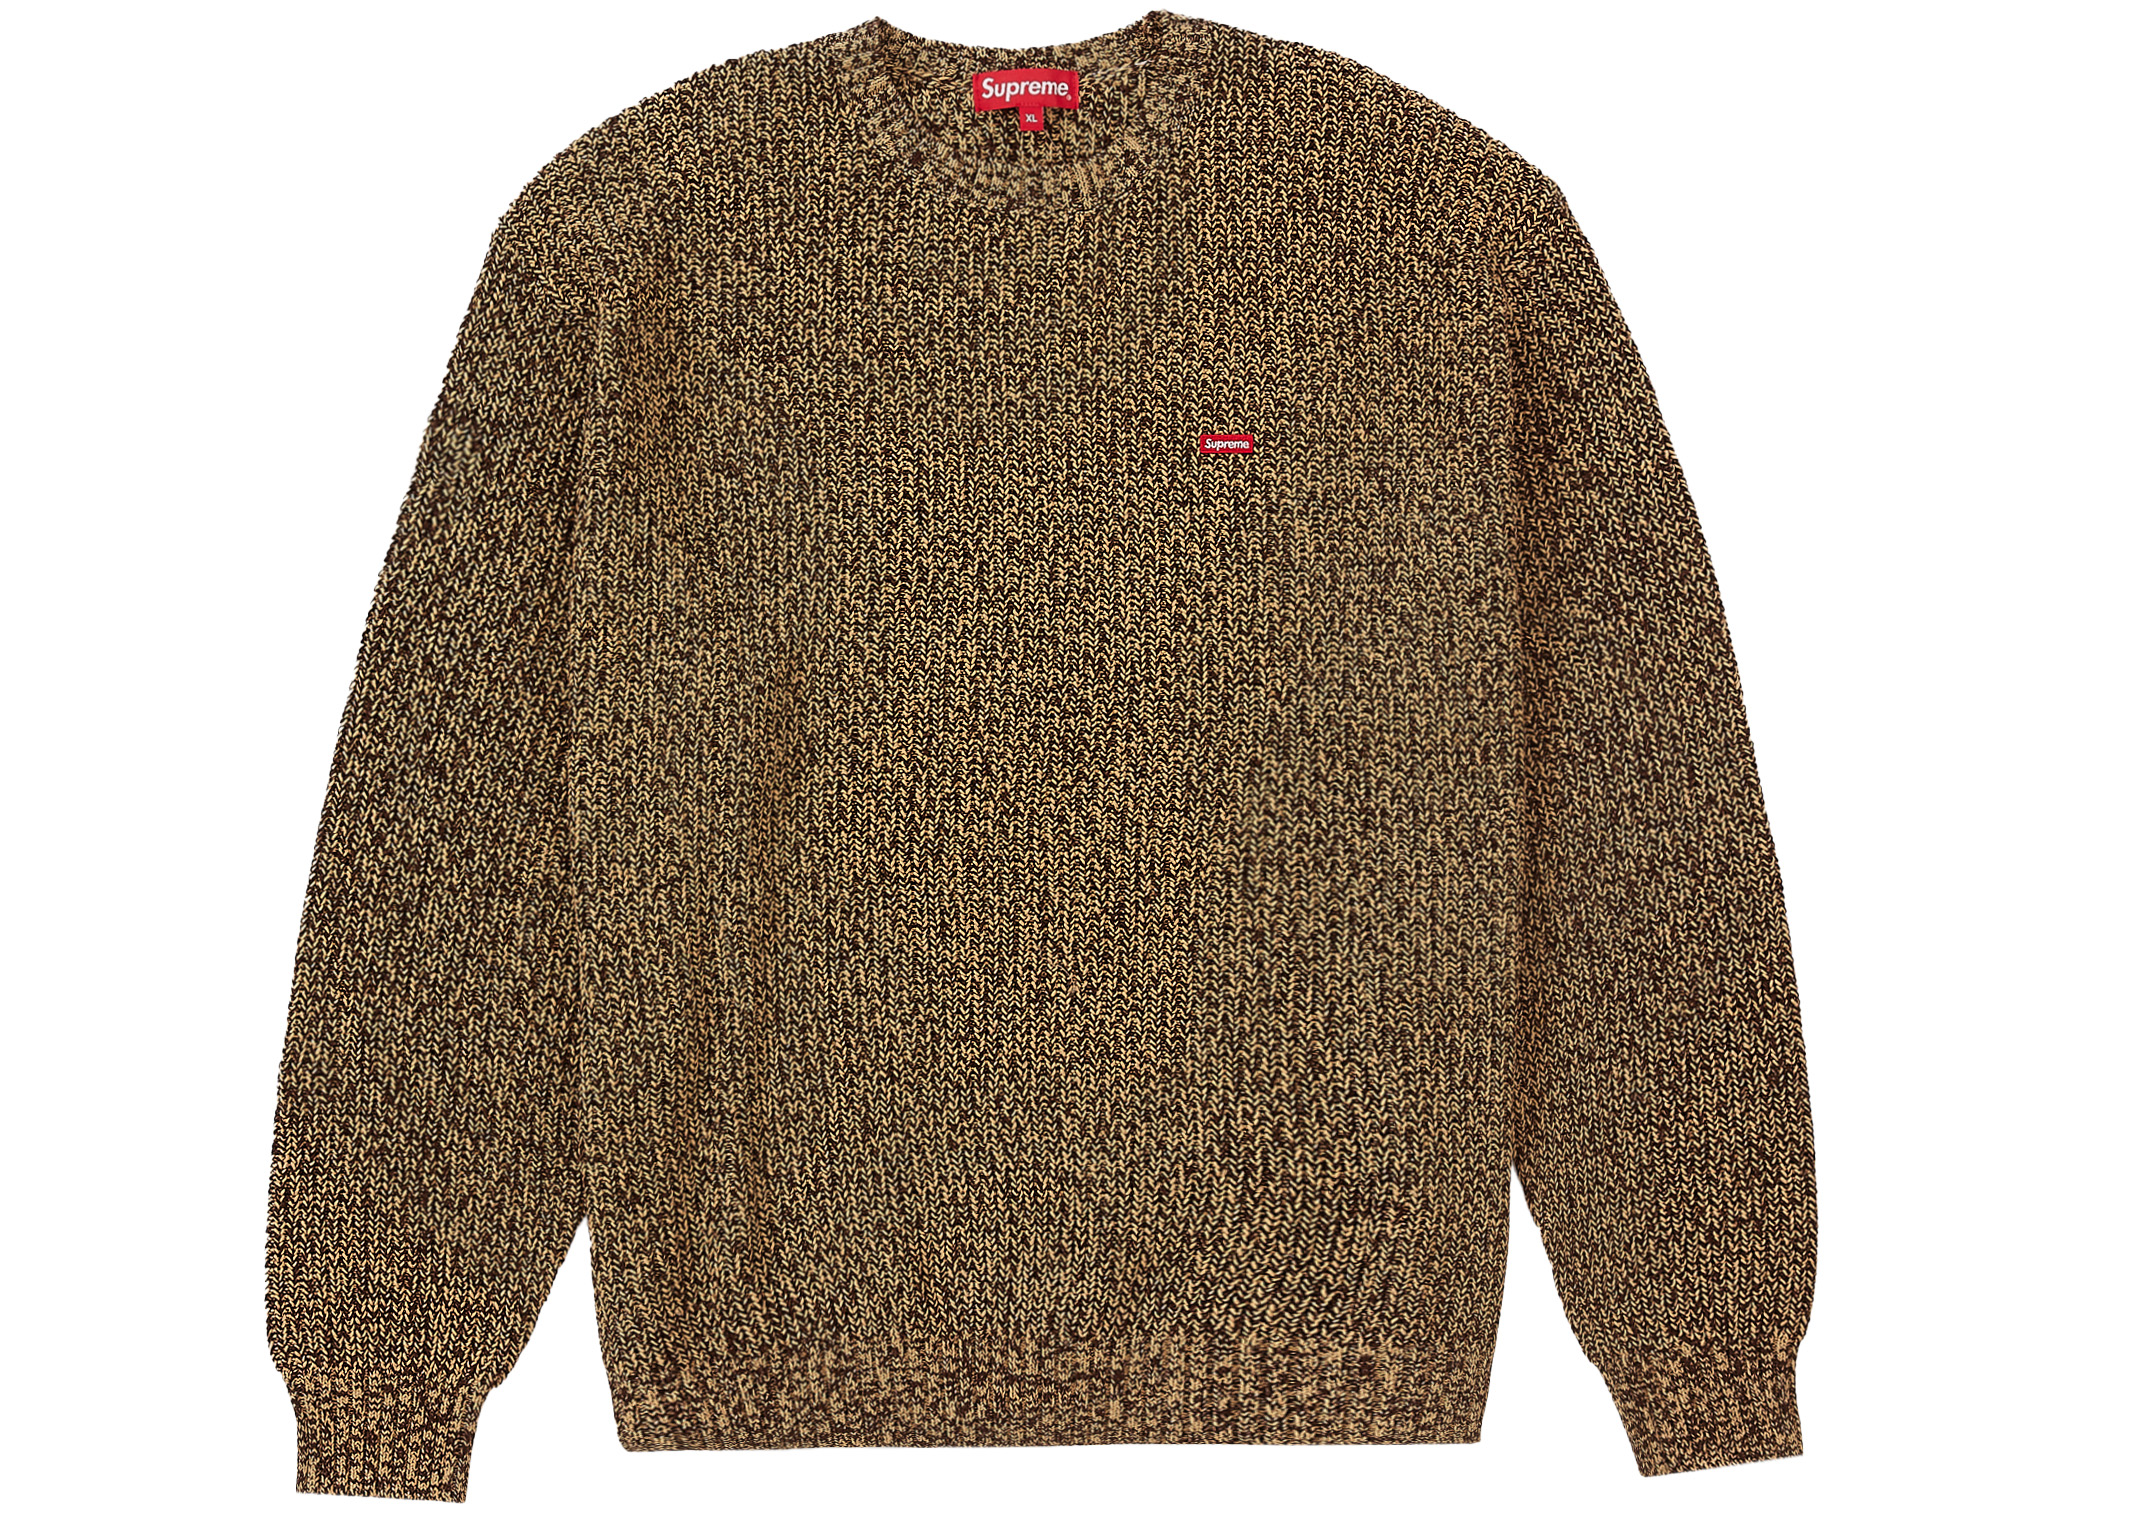 返品送料無料 supreme melange rib knit sweater XL 新品 